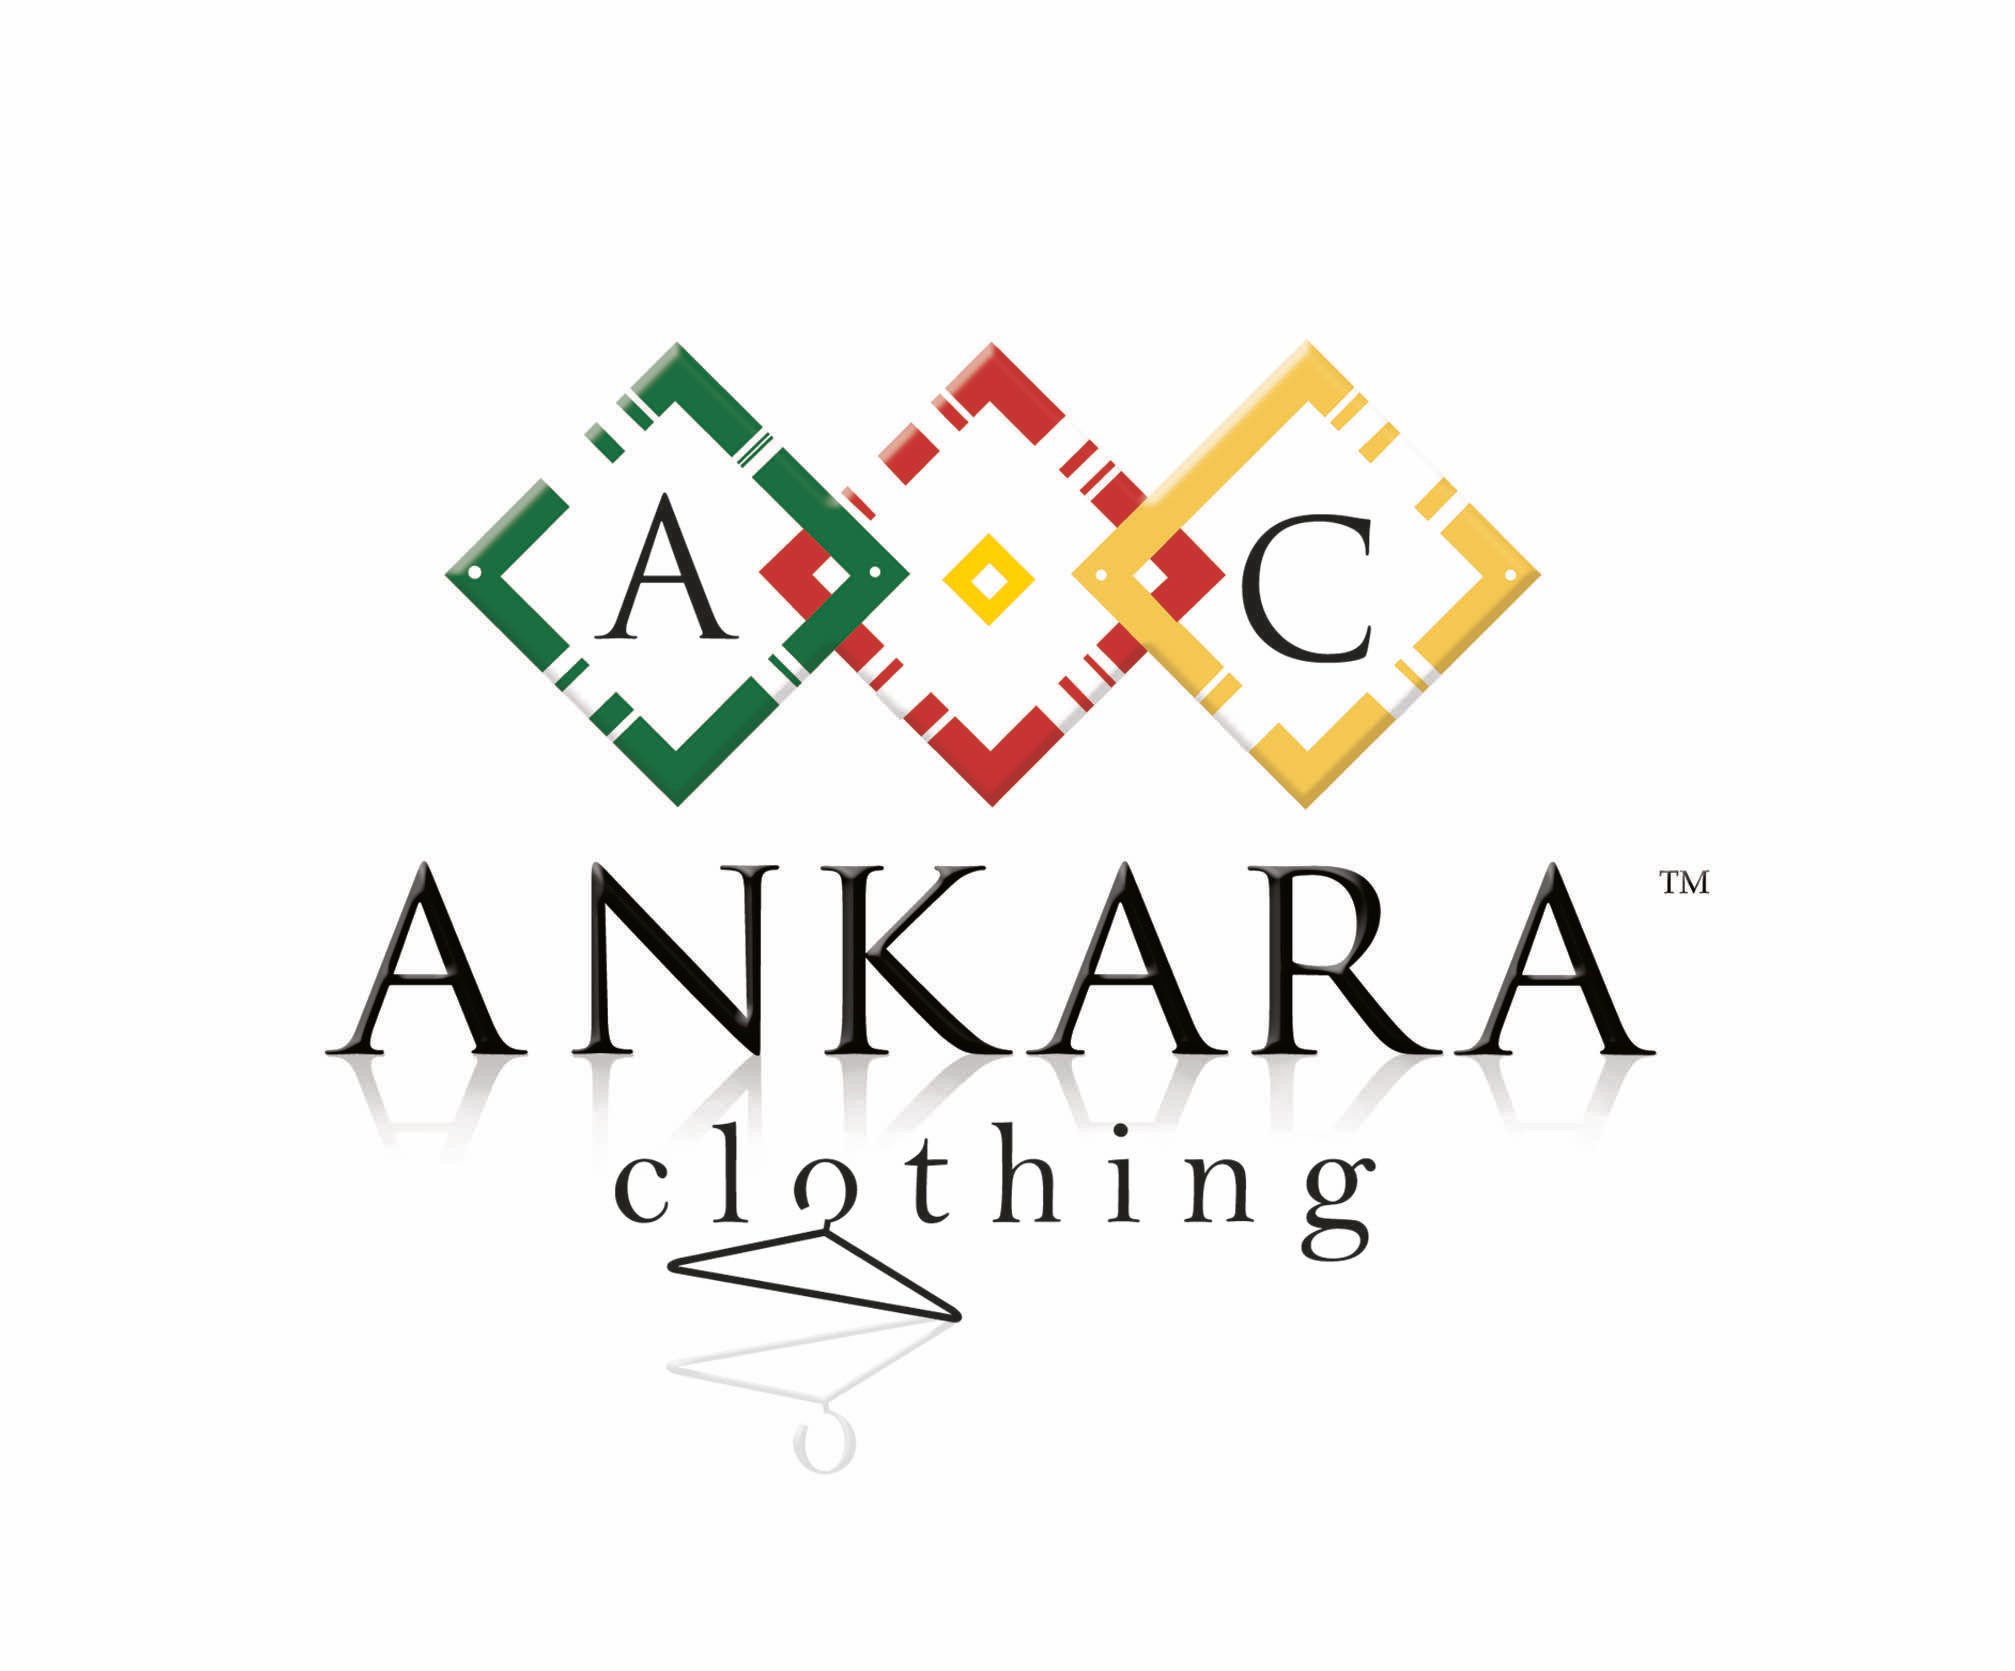 Ankara Logo - Ankara clothing. Brand Identity